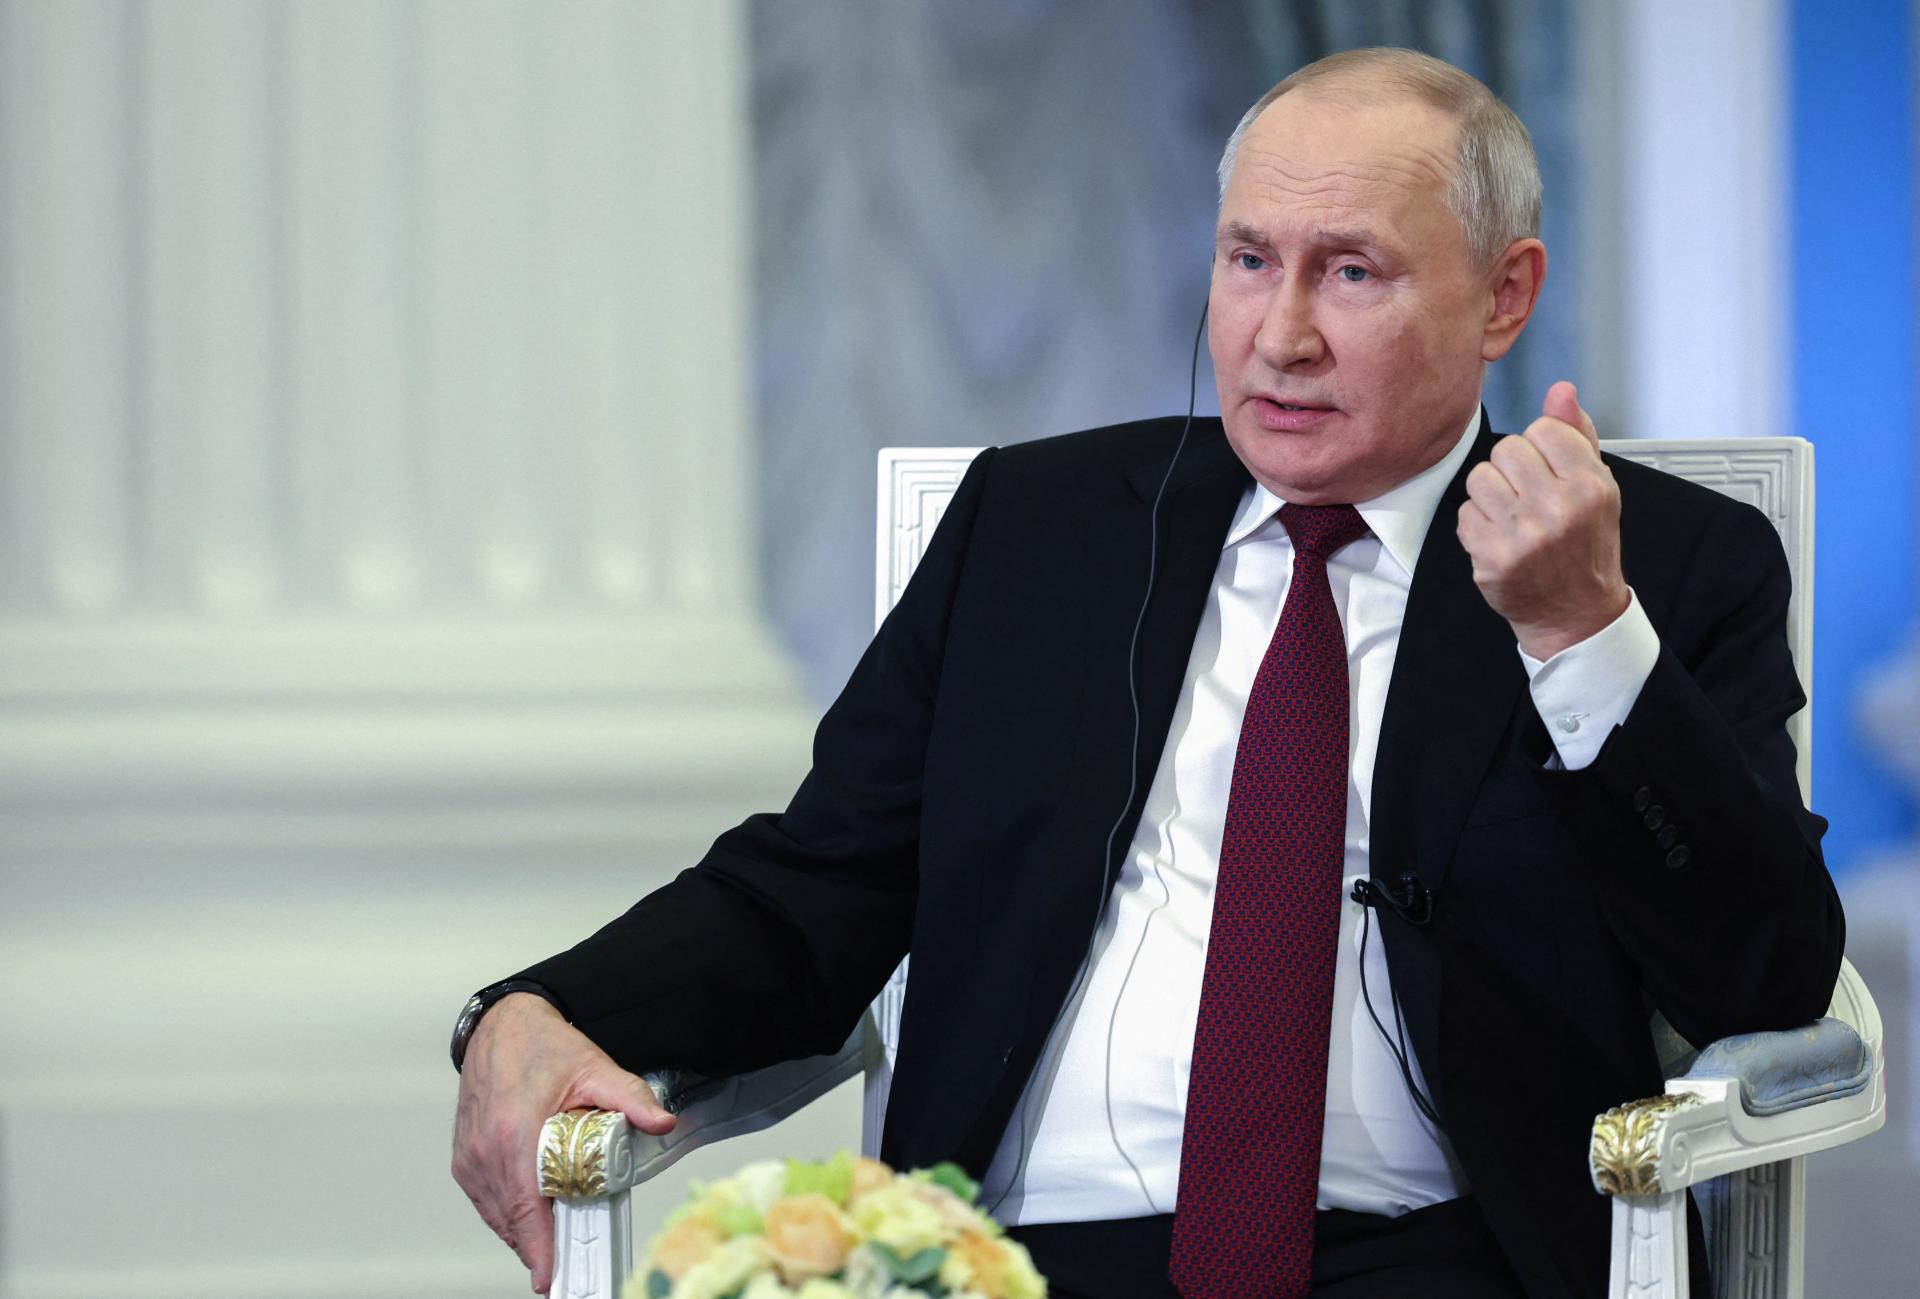 Rusko je pripravené napomôcť k mieru, povedal Putin izraelskému premiérovi